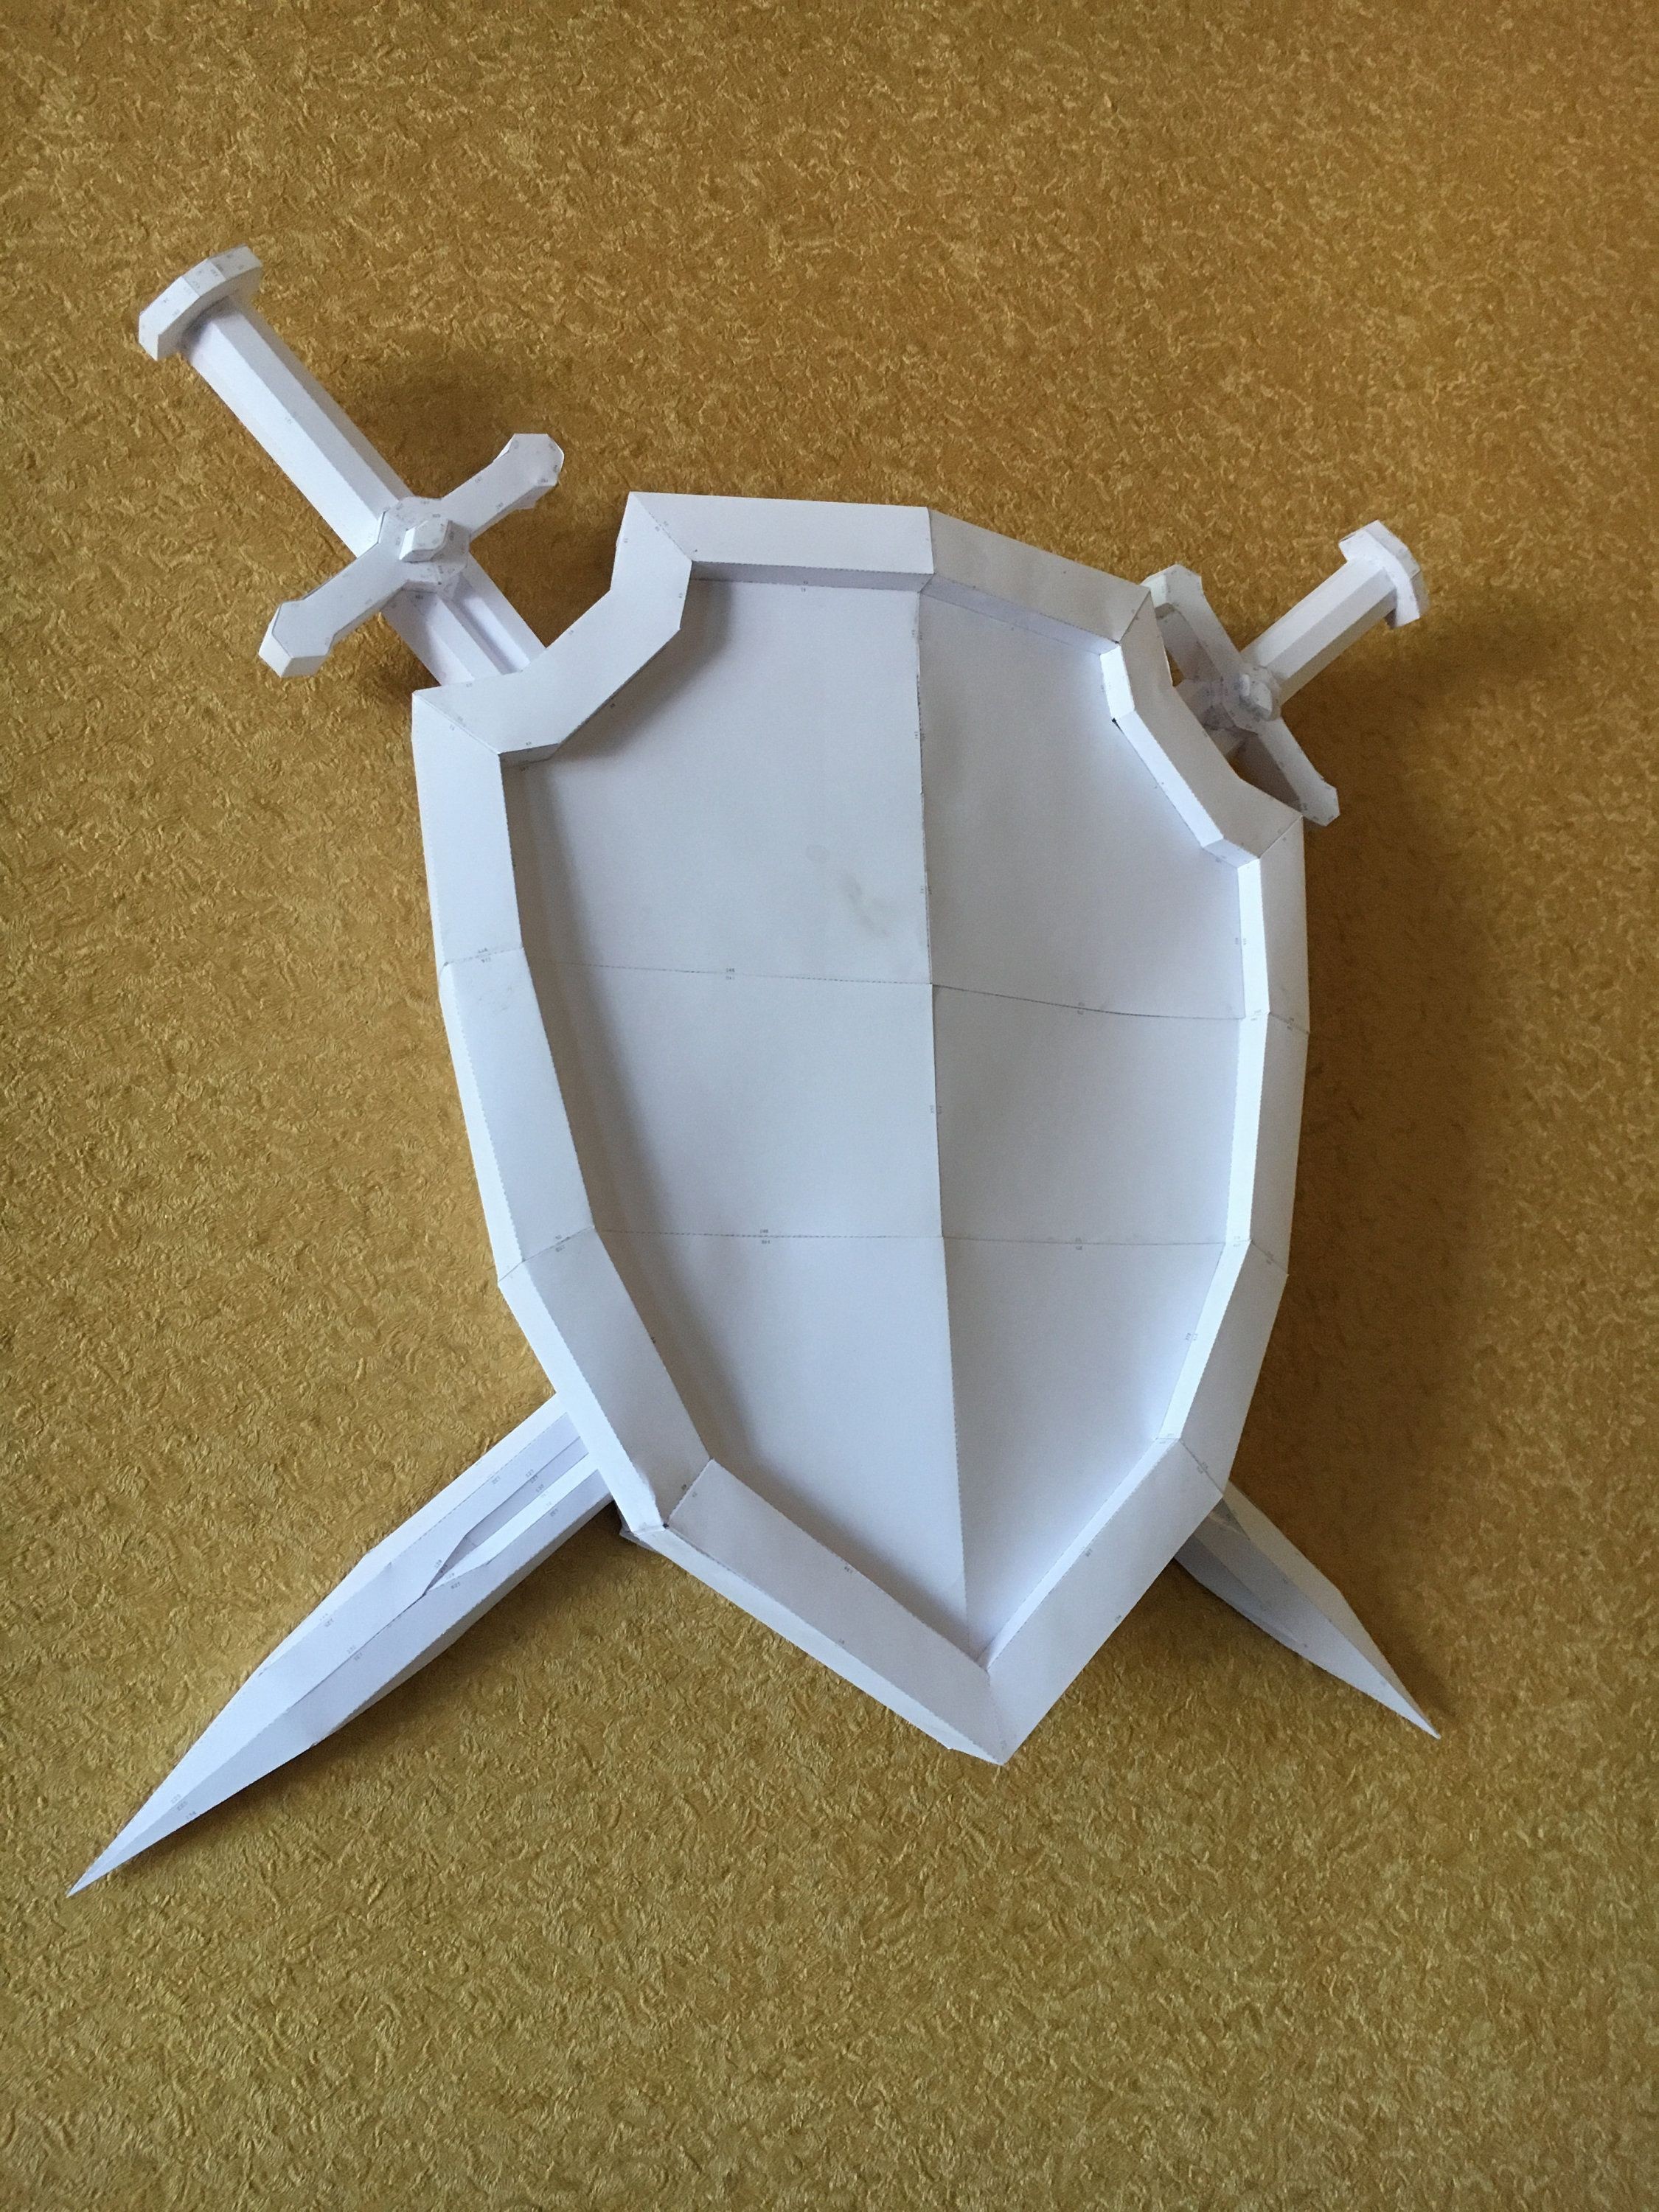 Skull Papercraft Sword Shield Diy Papercraft Model ÐÑÐ¼Ð°Ð¶Ð½ÑÐµ Ð¸Ð·Ð´ÐµÐ Ð¸Ñ